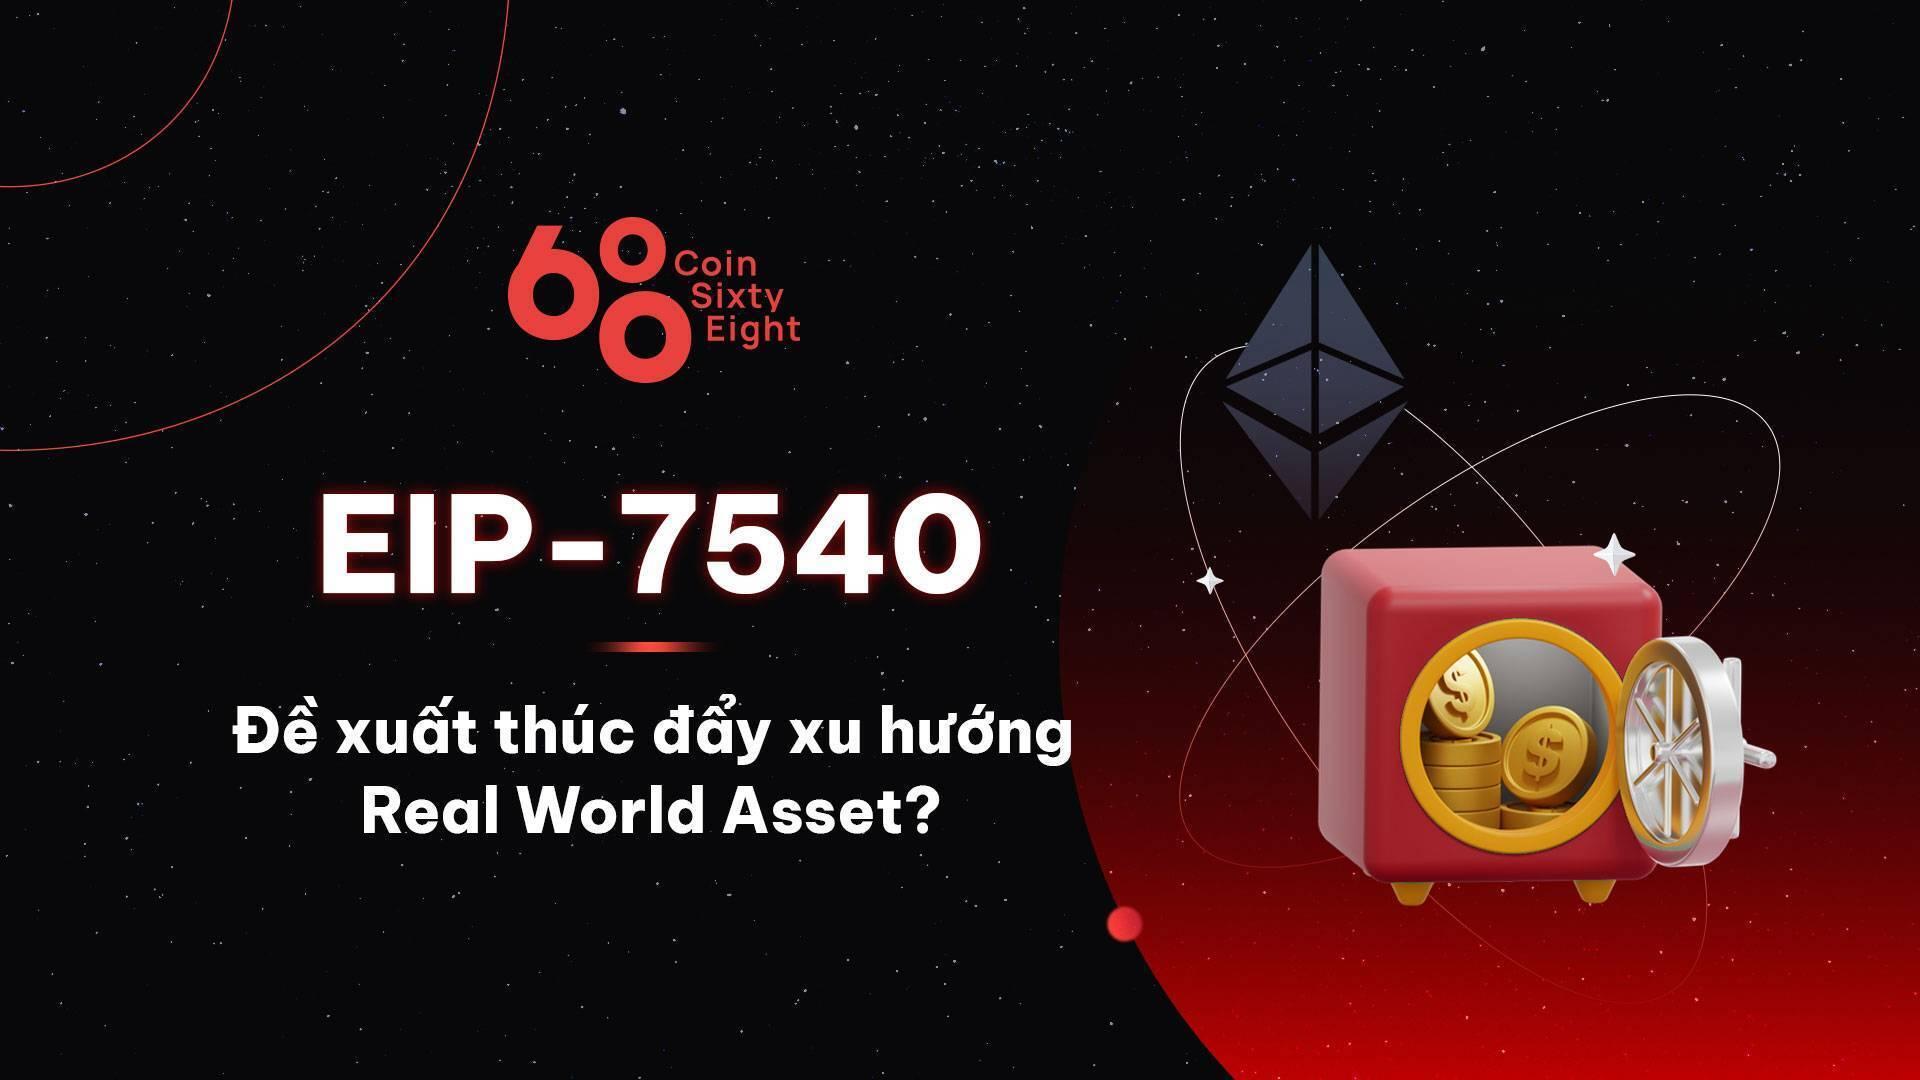 eip-7540-la-gi-de-xuat-thuc-day-xu-huong-real-world-asset-rwa-la-day